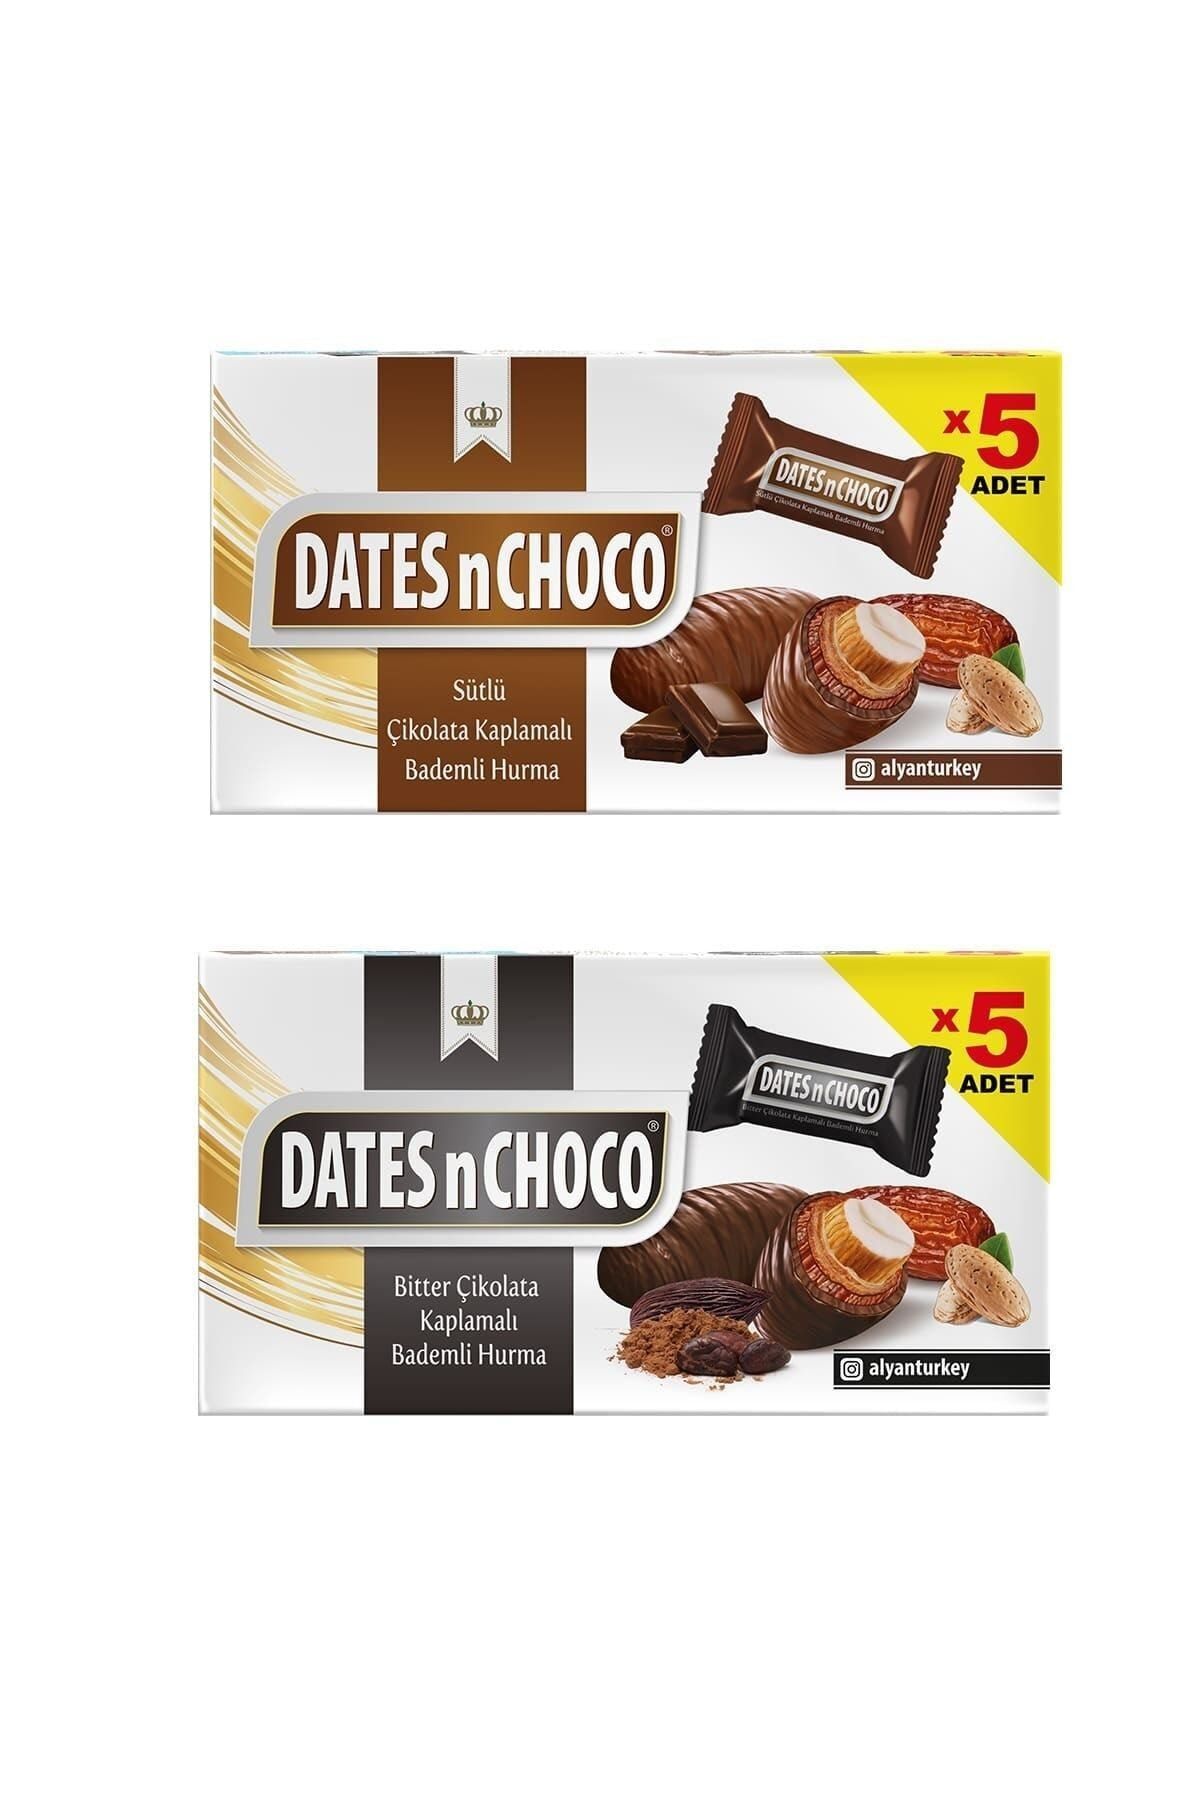 DATESnCHOCO Dates N Chcoco Sütlü Çikolata Kaplı Hurma + Bitter Çikolata Kaplı Hurma